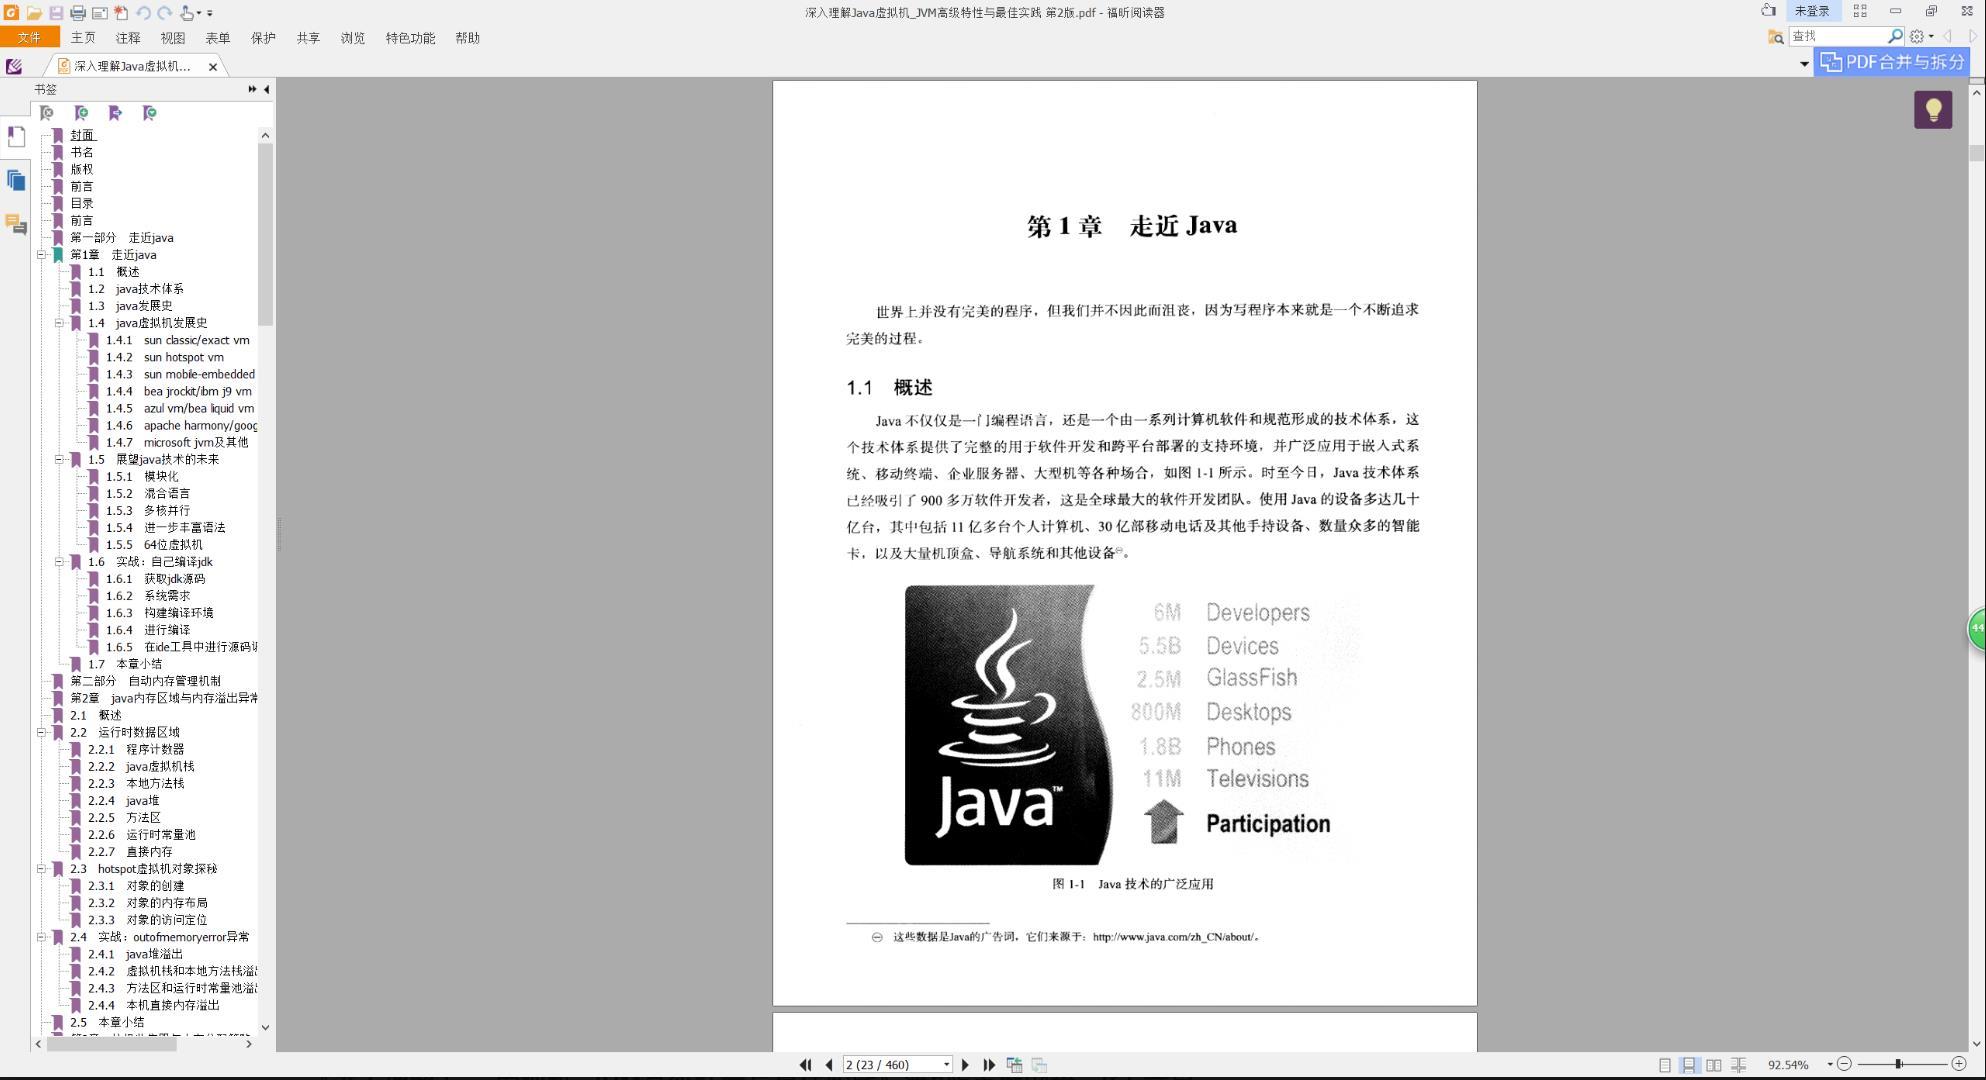 百度云深入理解Java教程虚拟机第2版pdf电子书籍下载